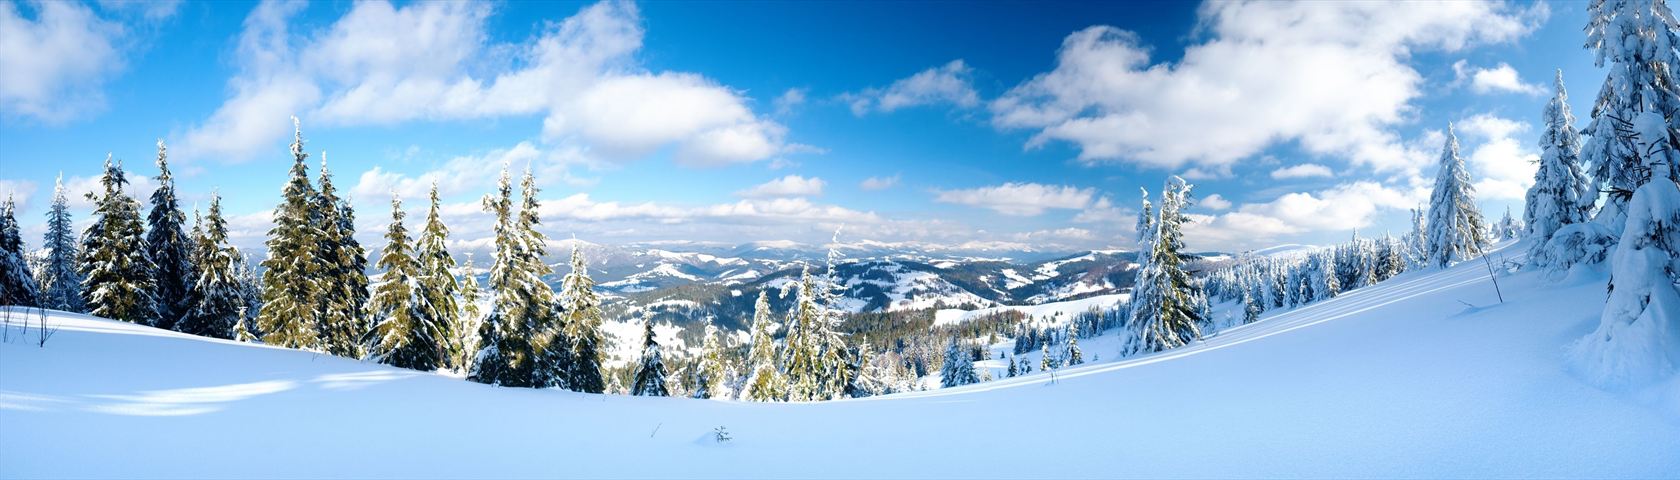 Snowy Mountain View